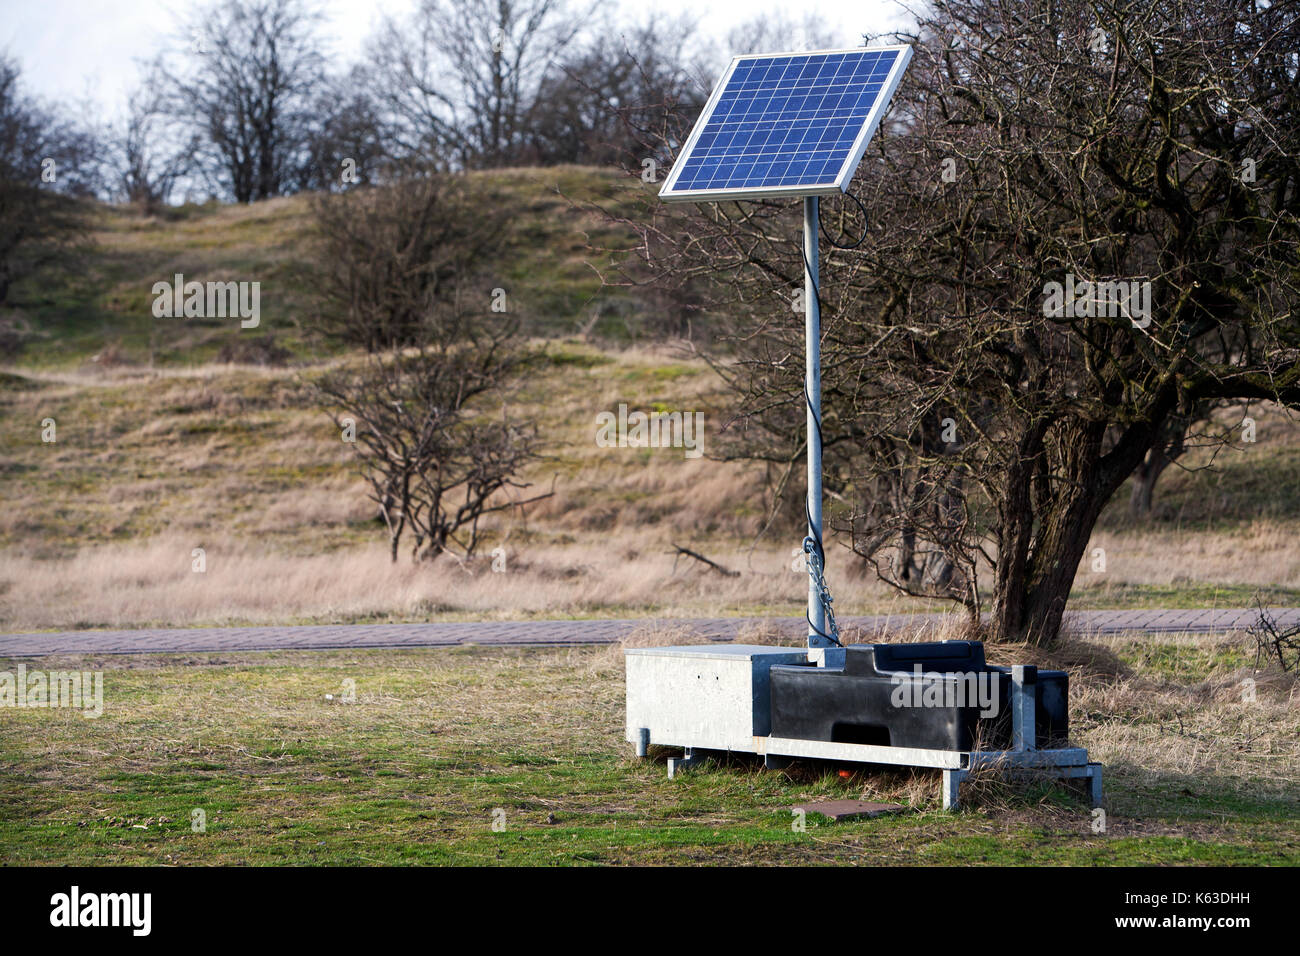 Solaranlage für wissenschaftliche Messungen in der amsterdamse Waterleidingduinen, den Niederlanden verwendet Stockfoto